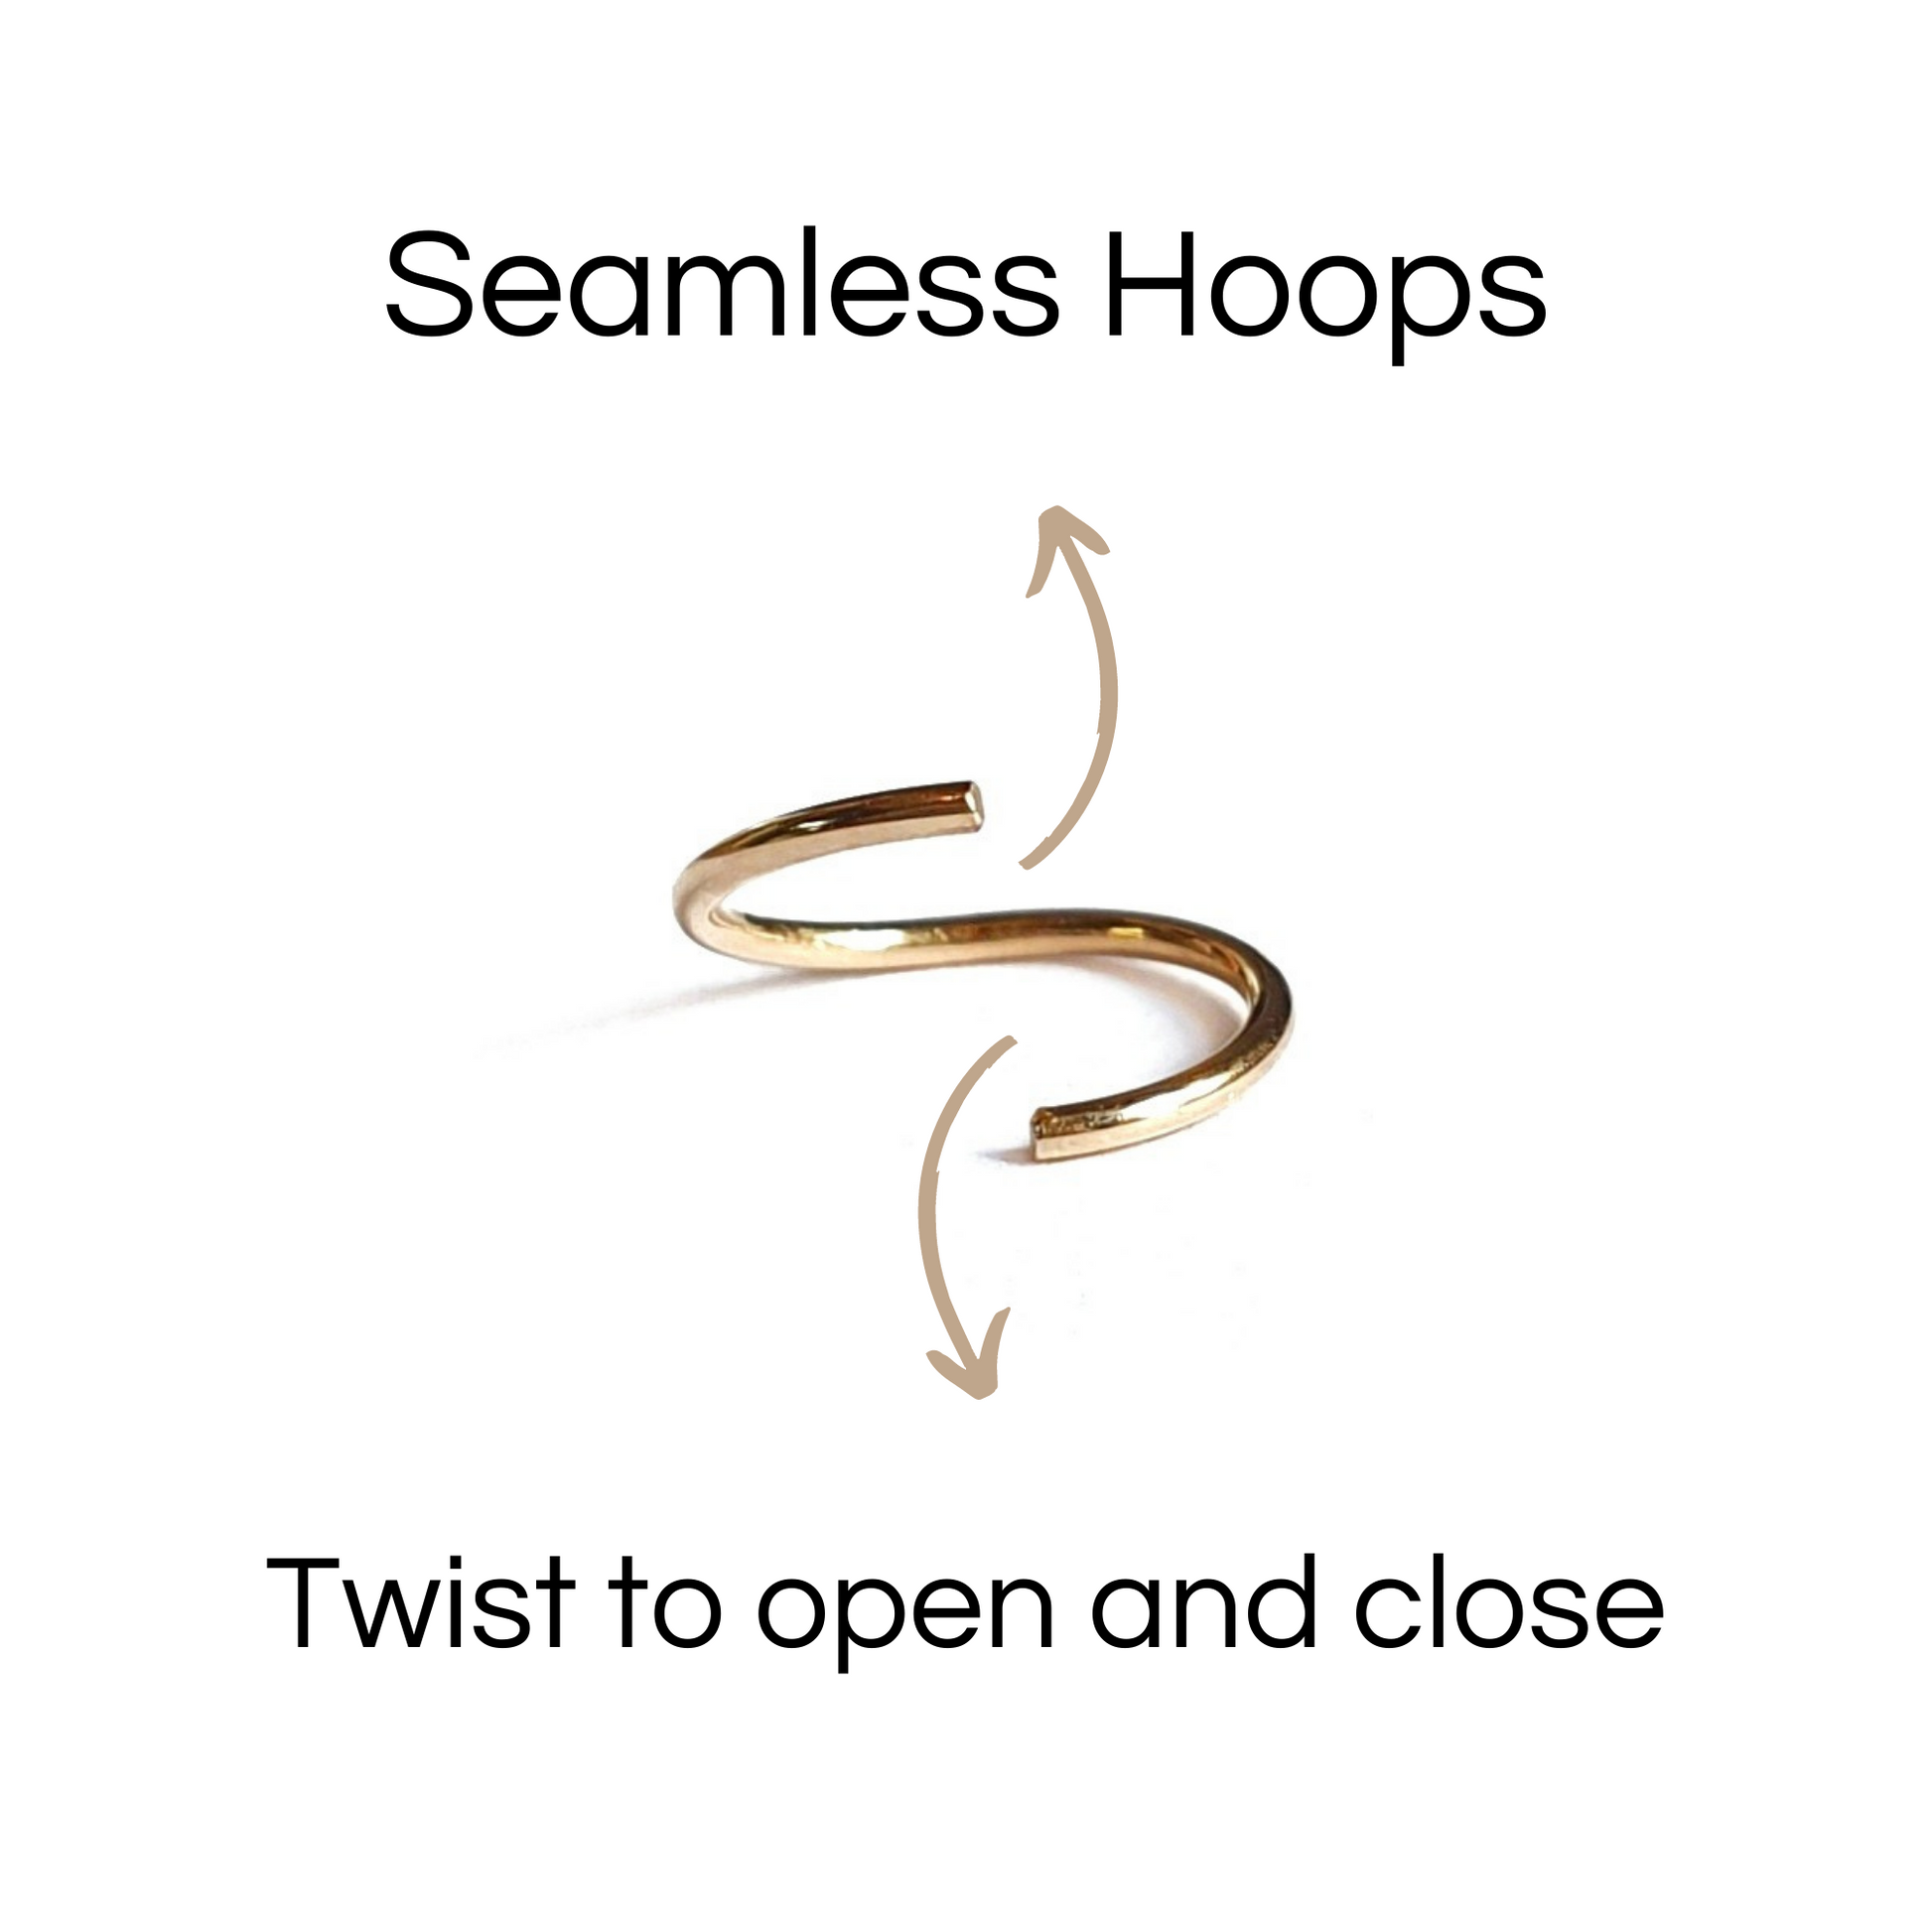 Seamless hoop in gold